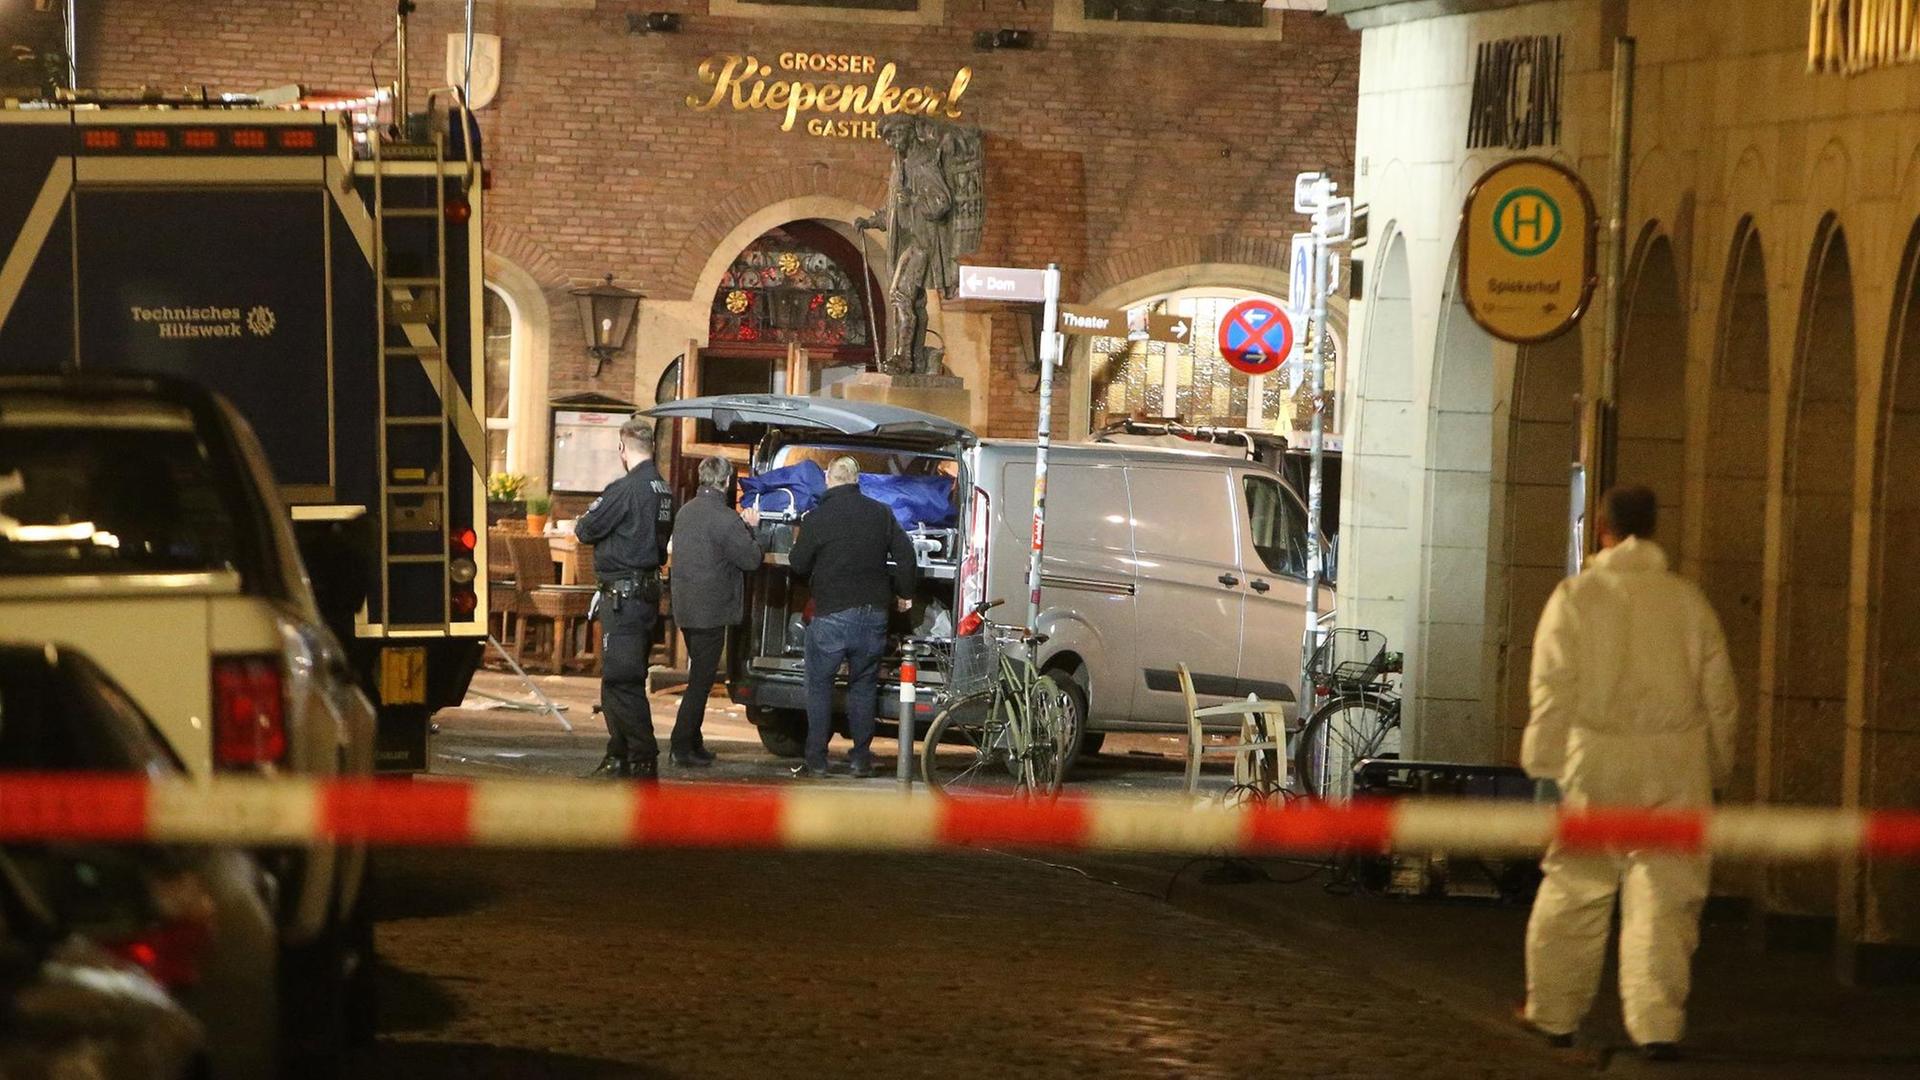 Bestatter verladen vor dem Restaurant "Kiepenkerl" in Münster einen Leichnam in ein Fahrzeug.